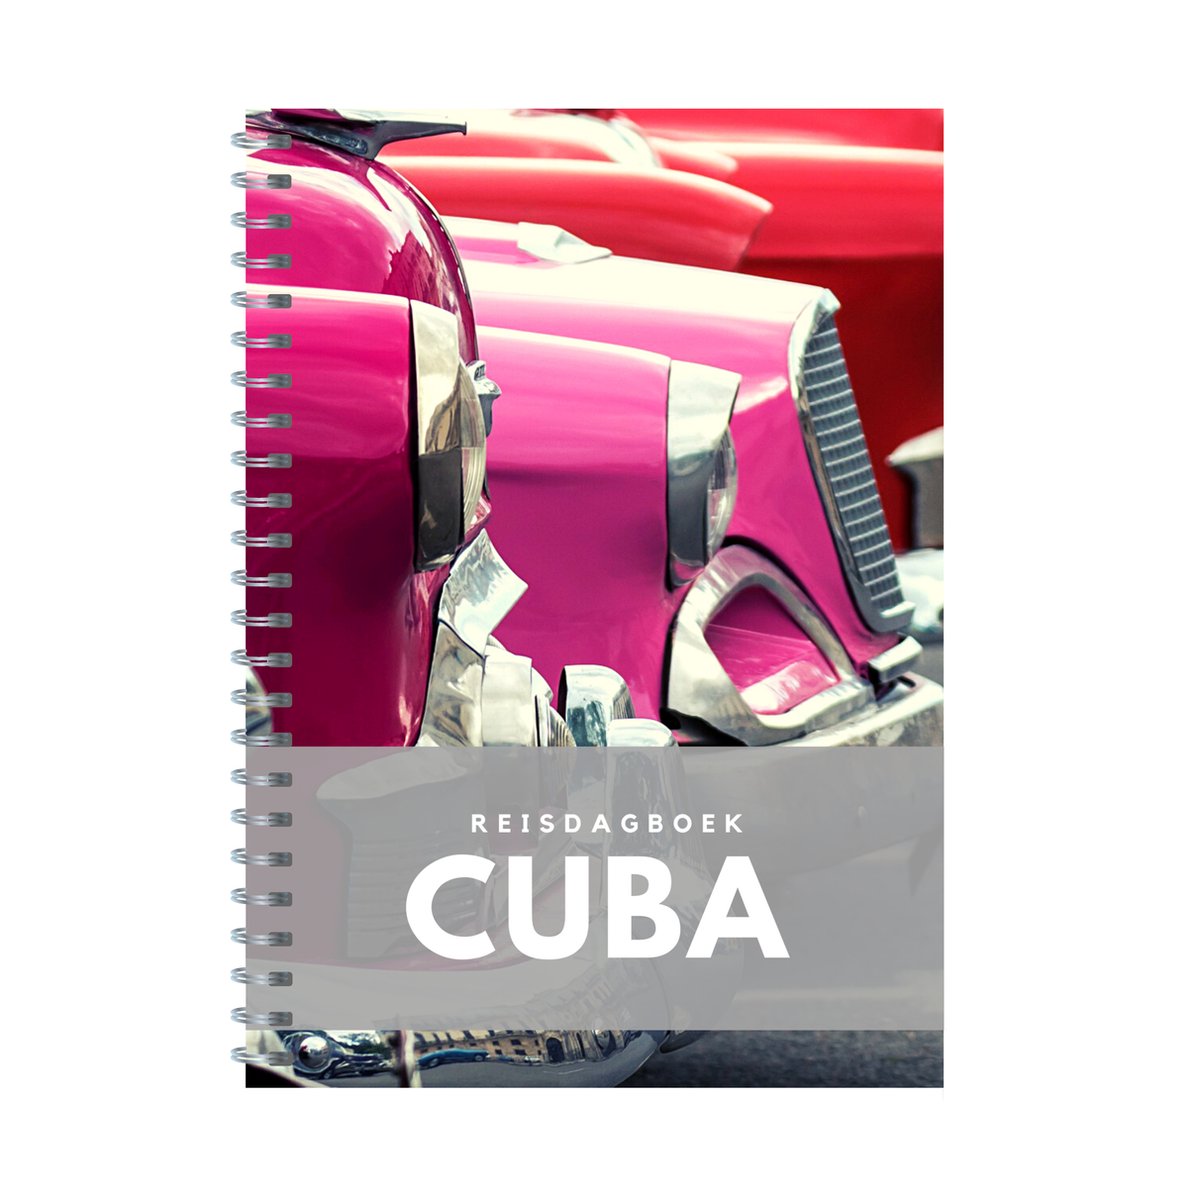 Reisdagboek Cuba - schrijf je eigen reisboek Cuba